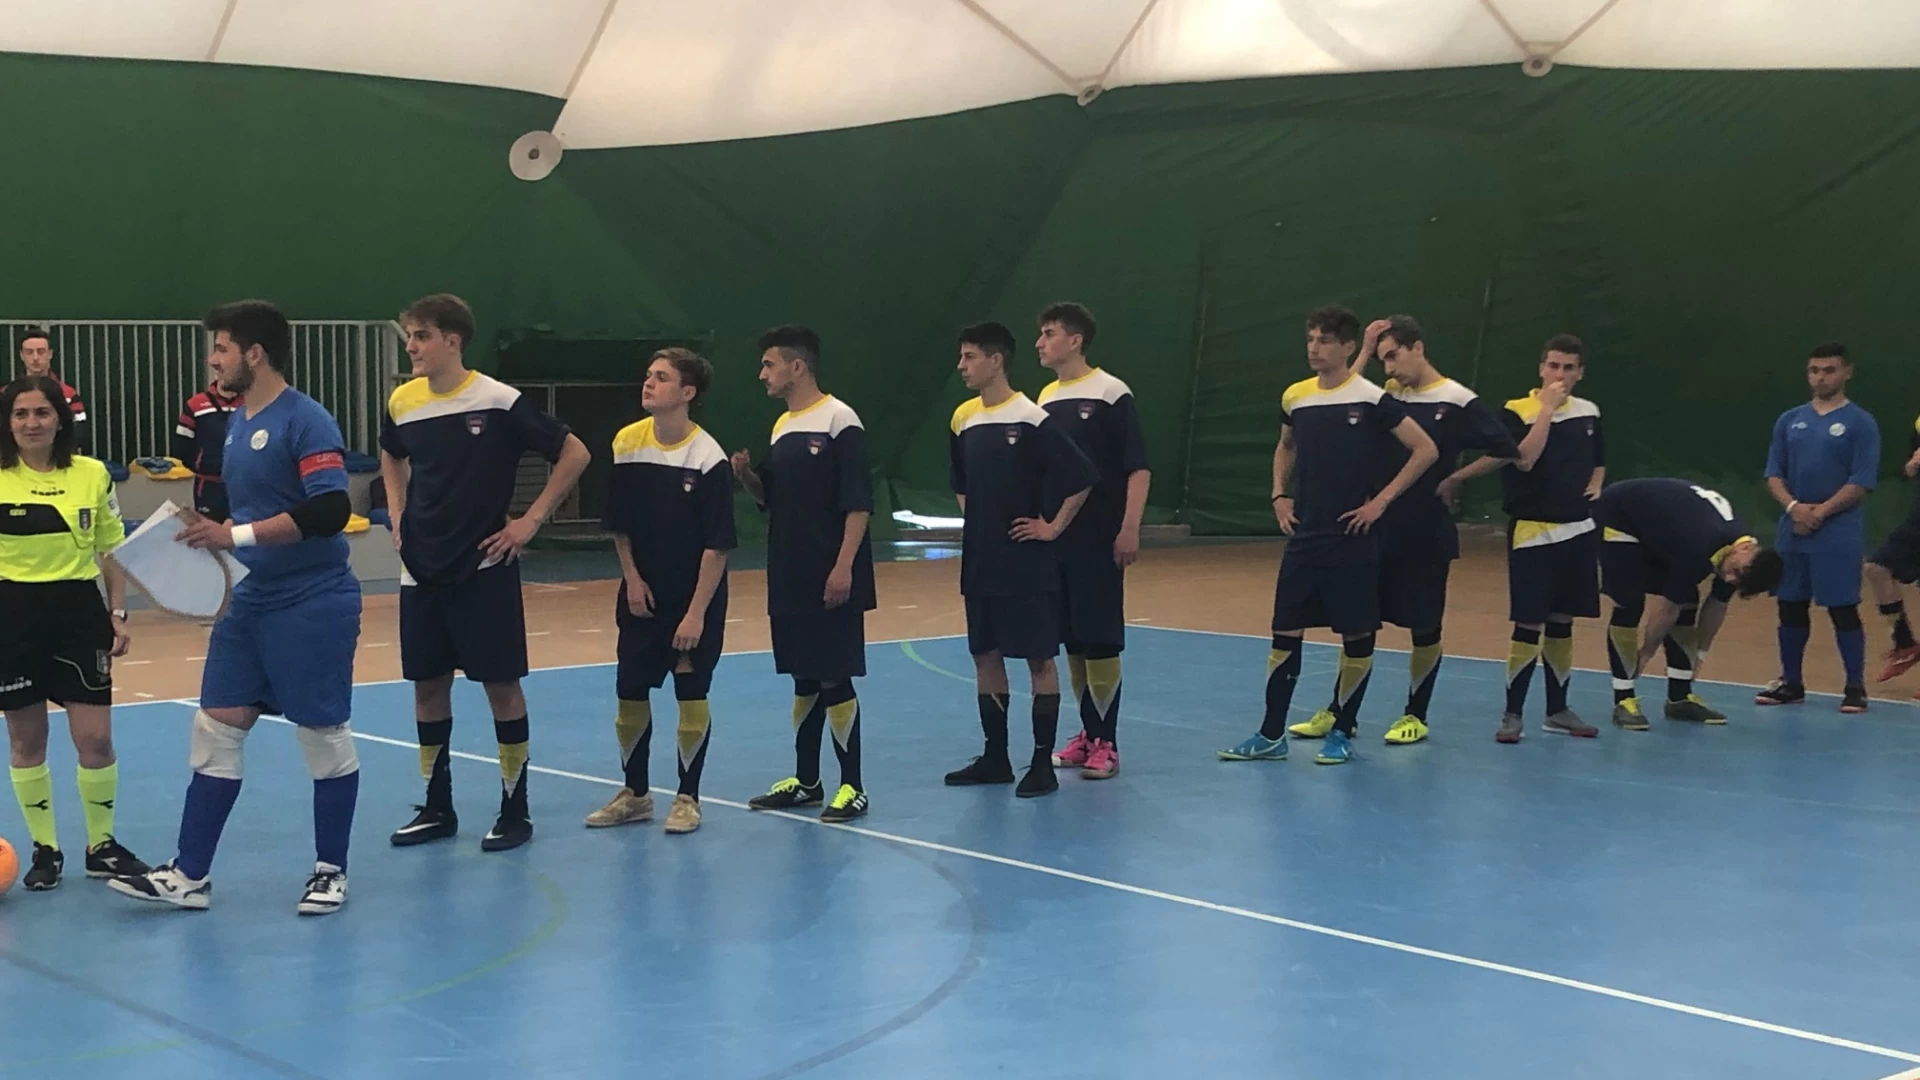 Calcio a 5: torneo delle regioni. La Juniores sconfitta dal Piemonte -Valle d'Aosta torna a casa.